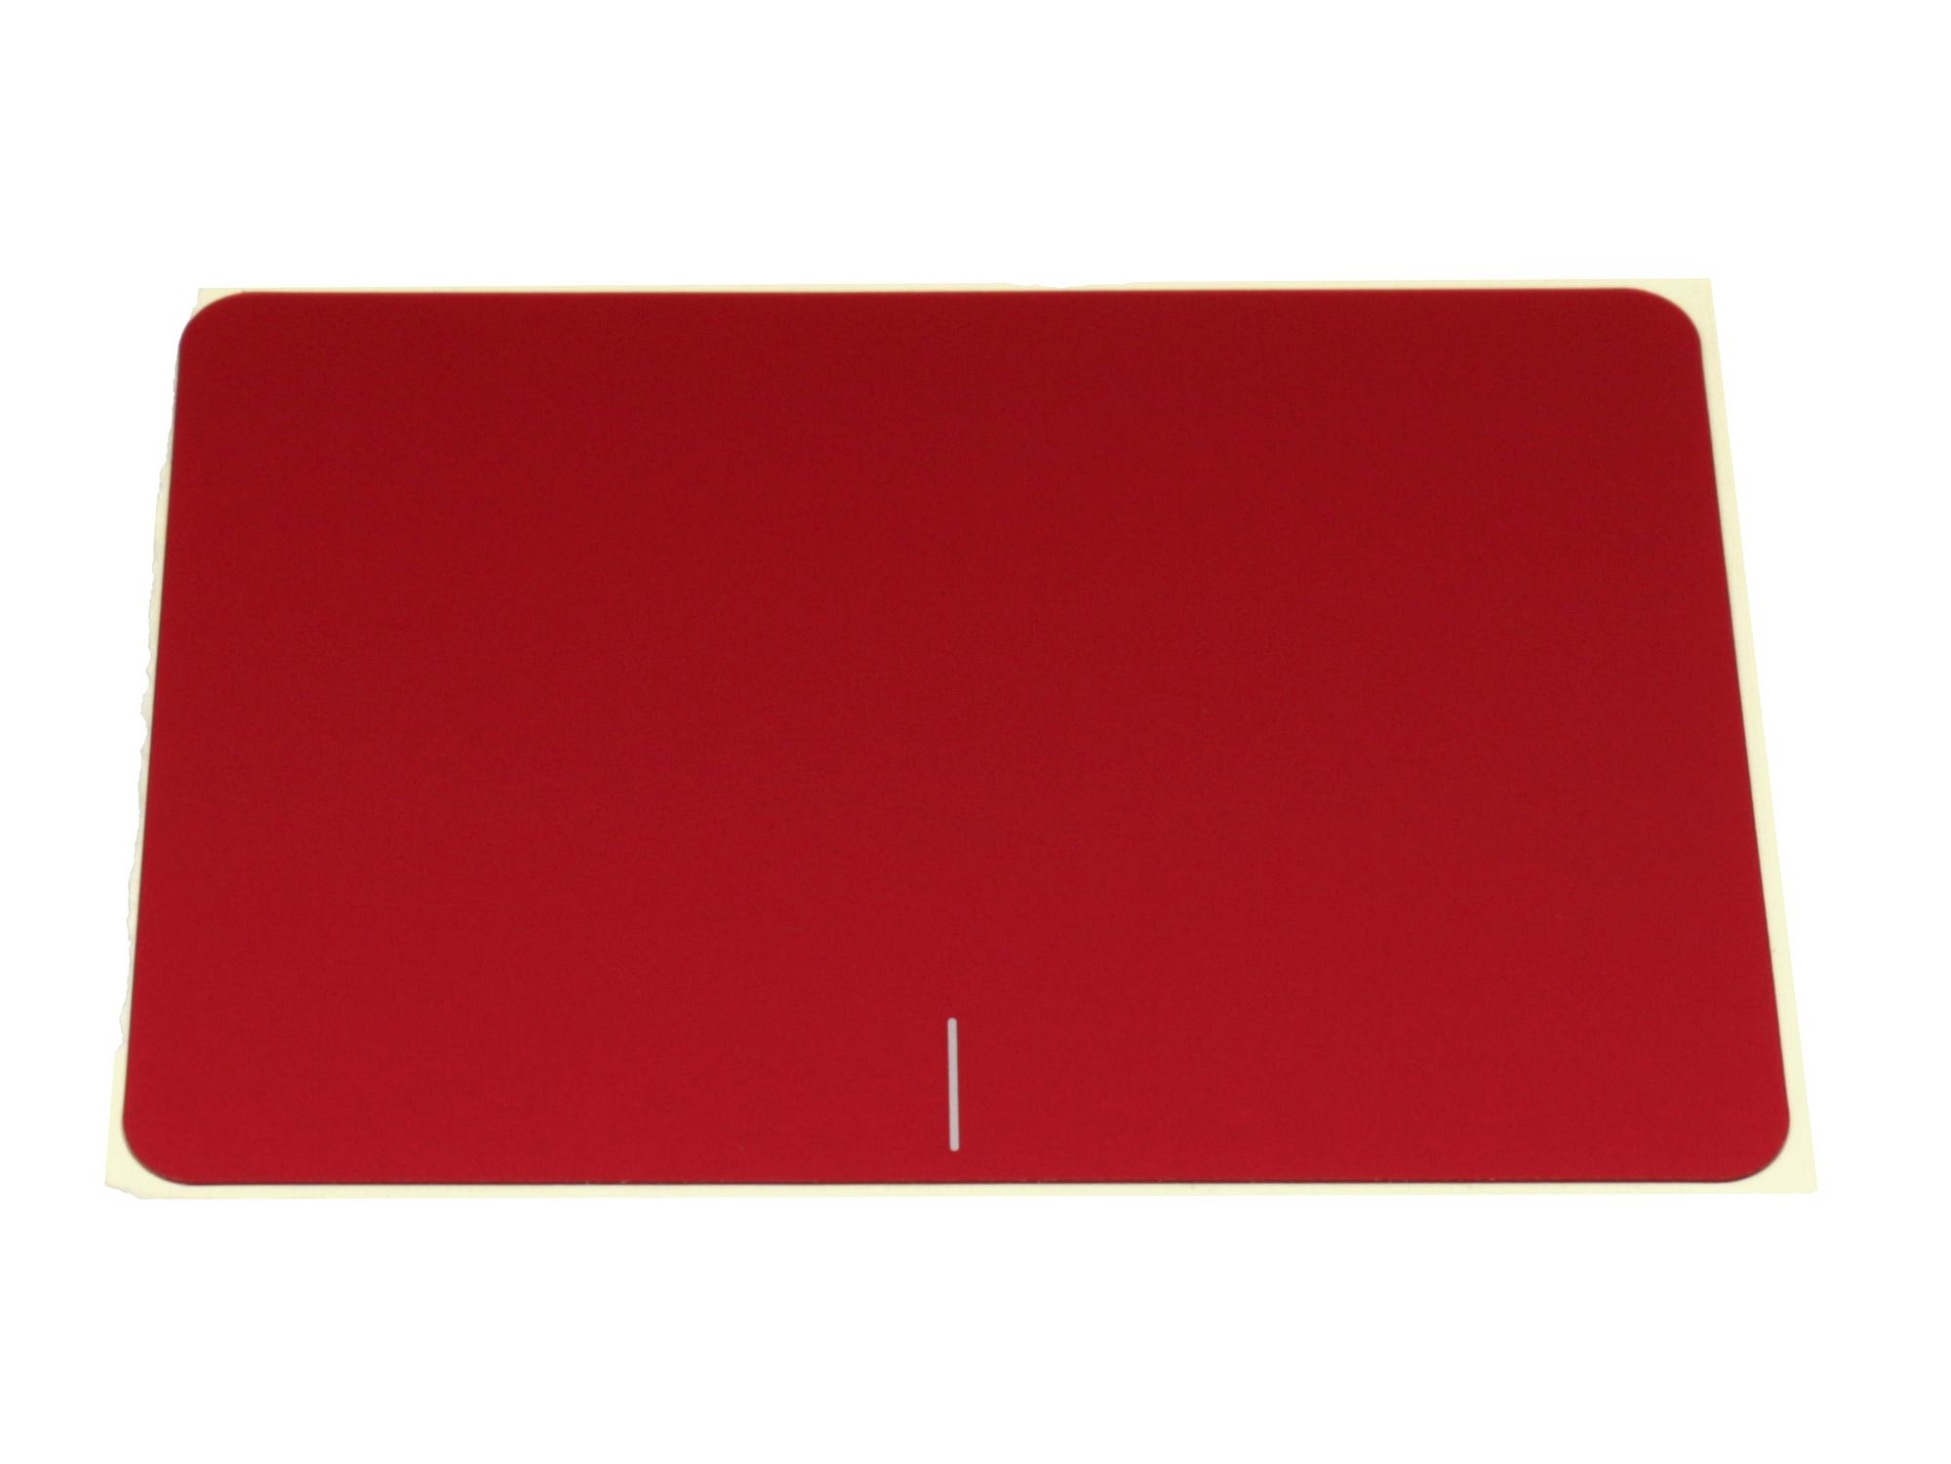 Touchpad Abdeckung rot für Asus F556UV